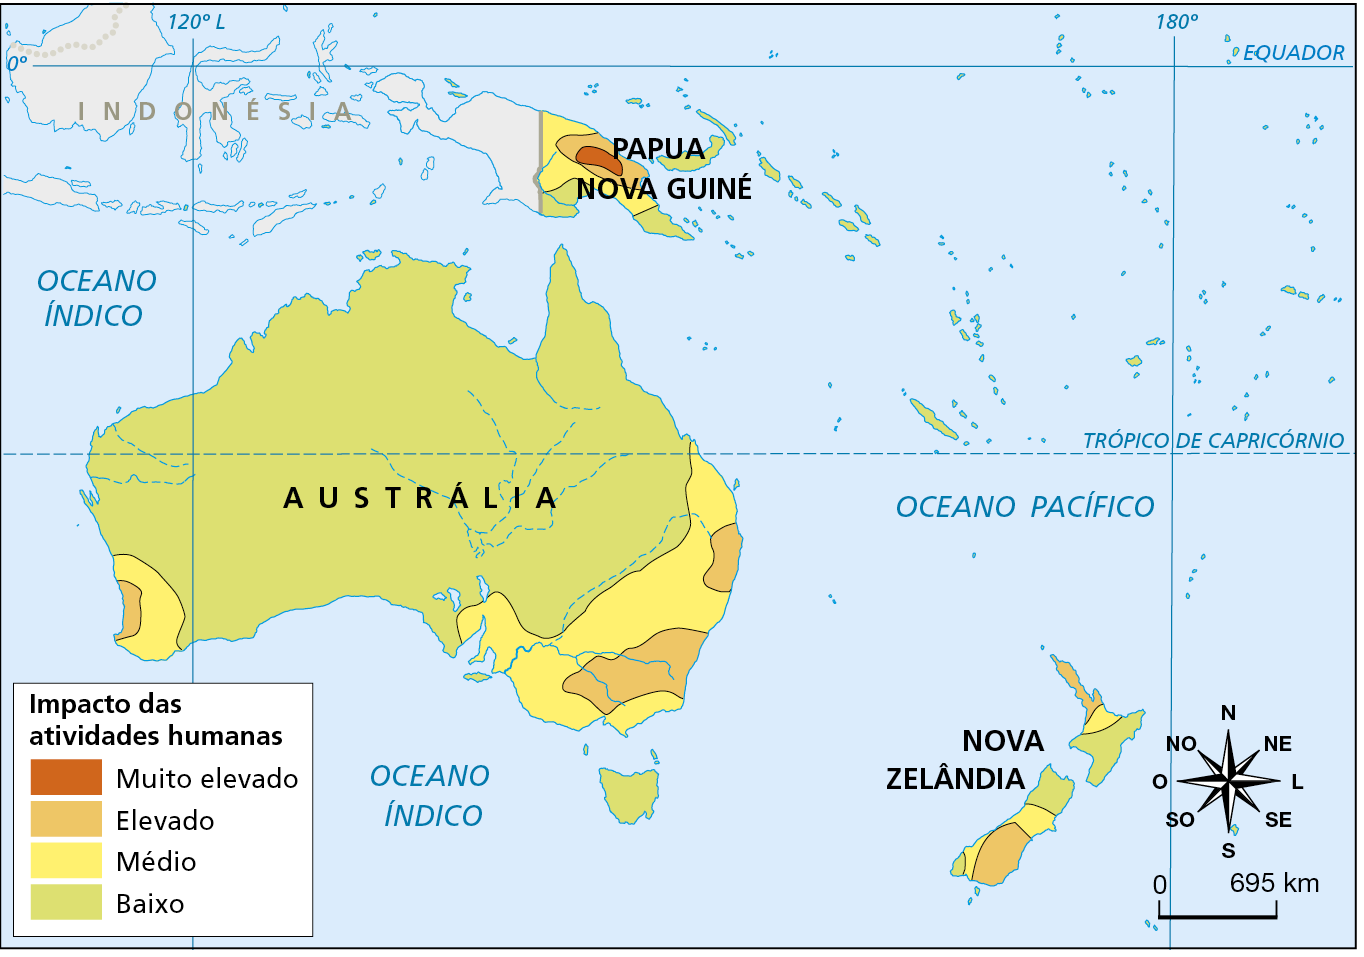 Mapa. Oceania: impacto antrópico, 2010. Mapa mostrando o nível de impacto das atividades humanas na Oceania.
Impacto das atividades humanas.
Muito elevado: interior de Papua Nova Guiné.
Elevado: interior e litoral nordeste de Papua Nova Guiné, pequenos trechos da costa oeste, leste e sudeste da Austrália e porção norte e sul da Nova Zelândia.
Médio: porção central e norte de Papua Nova Guiné, porção sudeste e sudoeste da Austrália e porção norte e centro da Nova Zelândia.
Baixo: litoral sul de Papua Nova Guiné, porção norte, central e sul da Austrália, porção central da Nova Zelândia e as demais ilhas da Oceania.
Na parte inferior direita, rosa dos ventos e escala de 0 a 695 quilômetros.